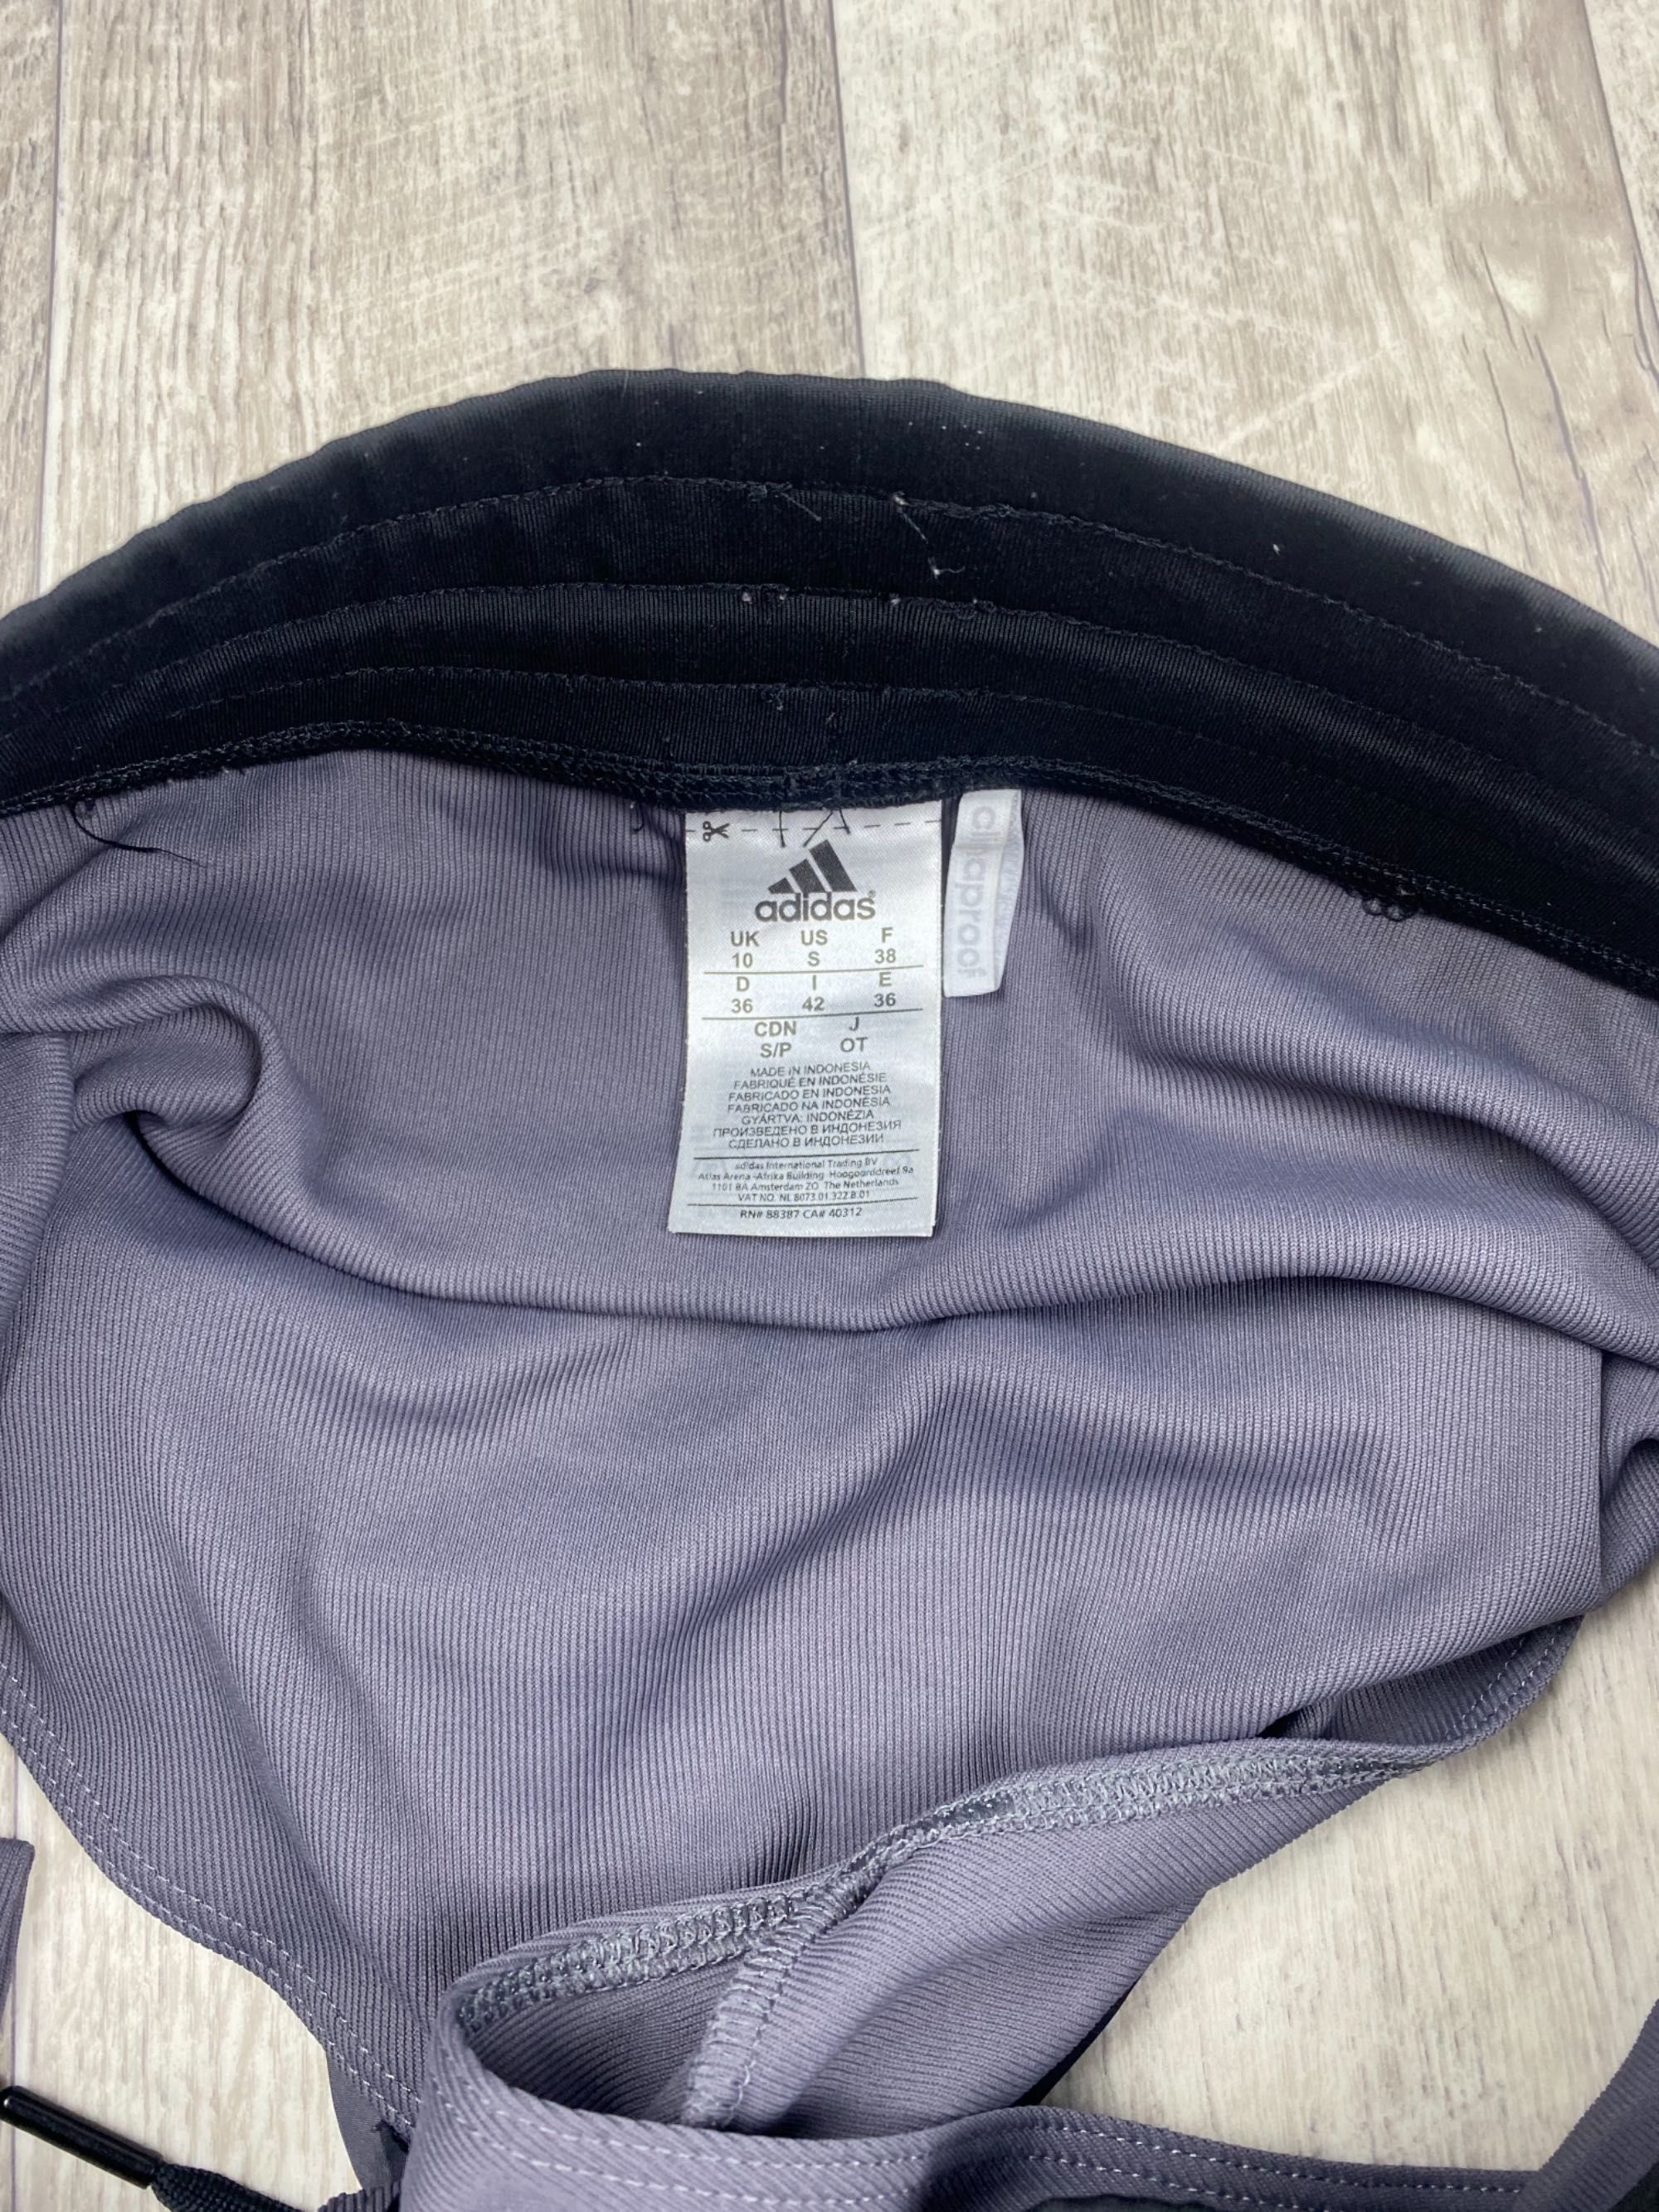 Adidas climaproof шорты s размер женские спортивные плащевка оригинал